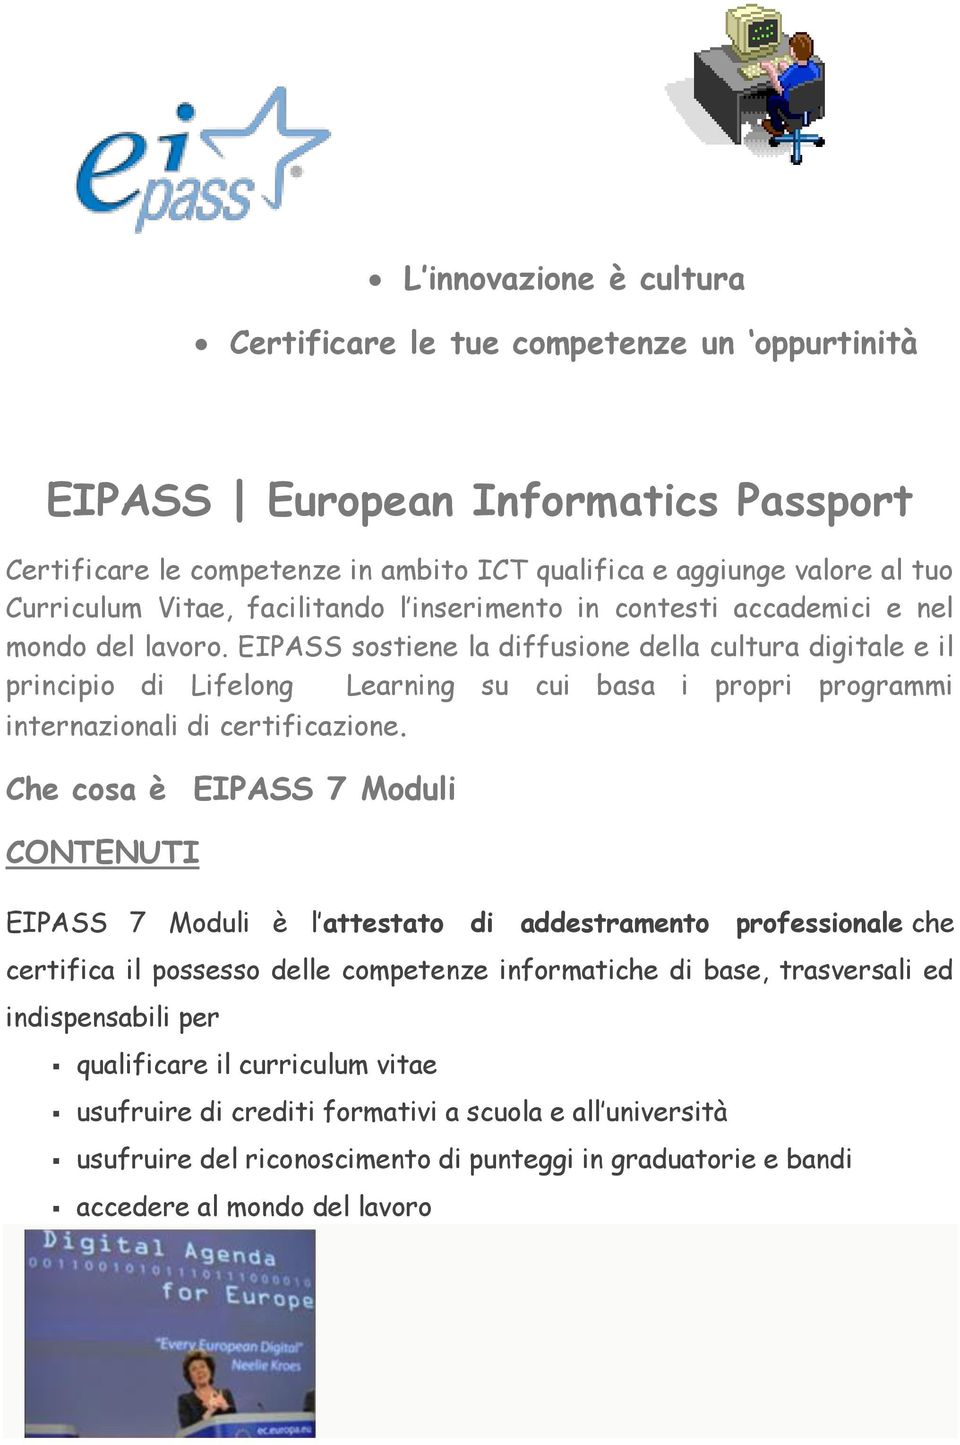 EIPASS sostiene la diffusione della cultura digitale e il principio di Lifelong Learning su cui basa i propri programmi internazionali di certificazione.